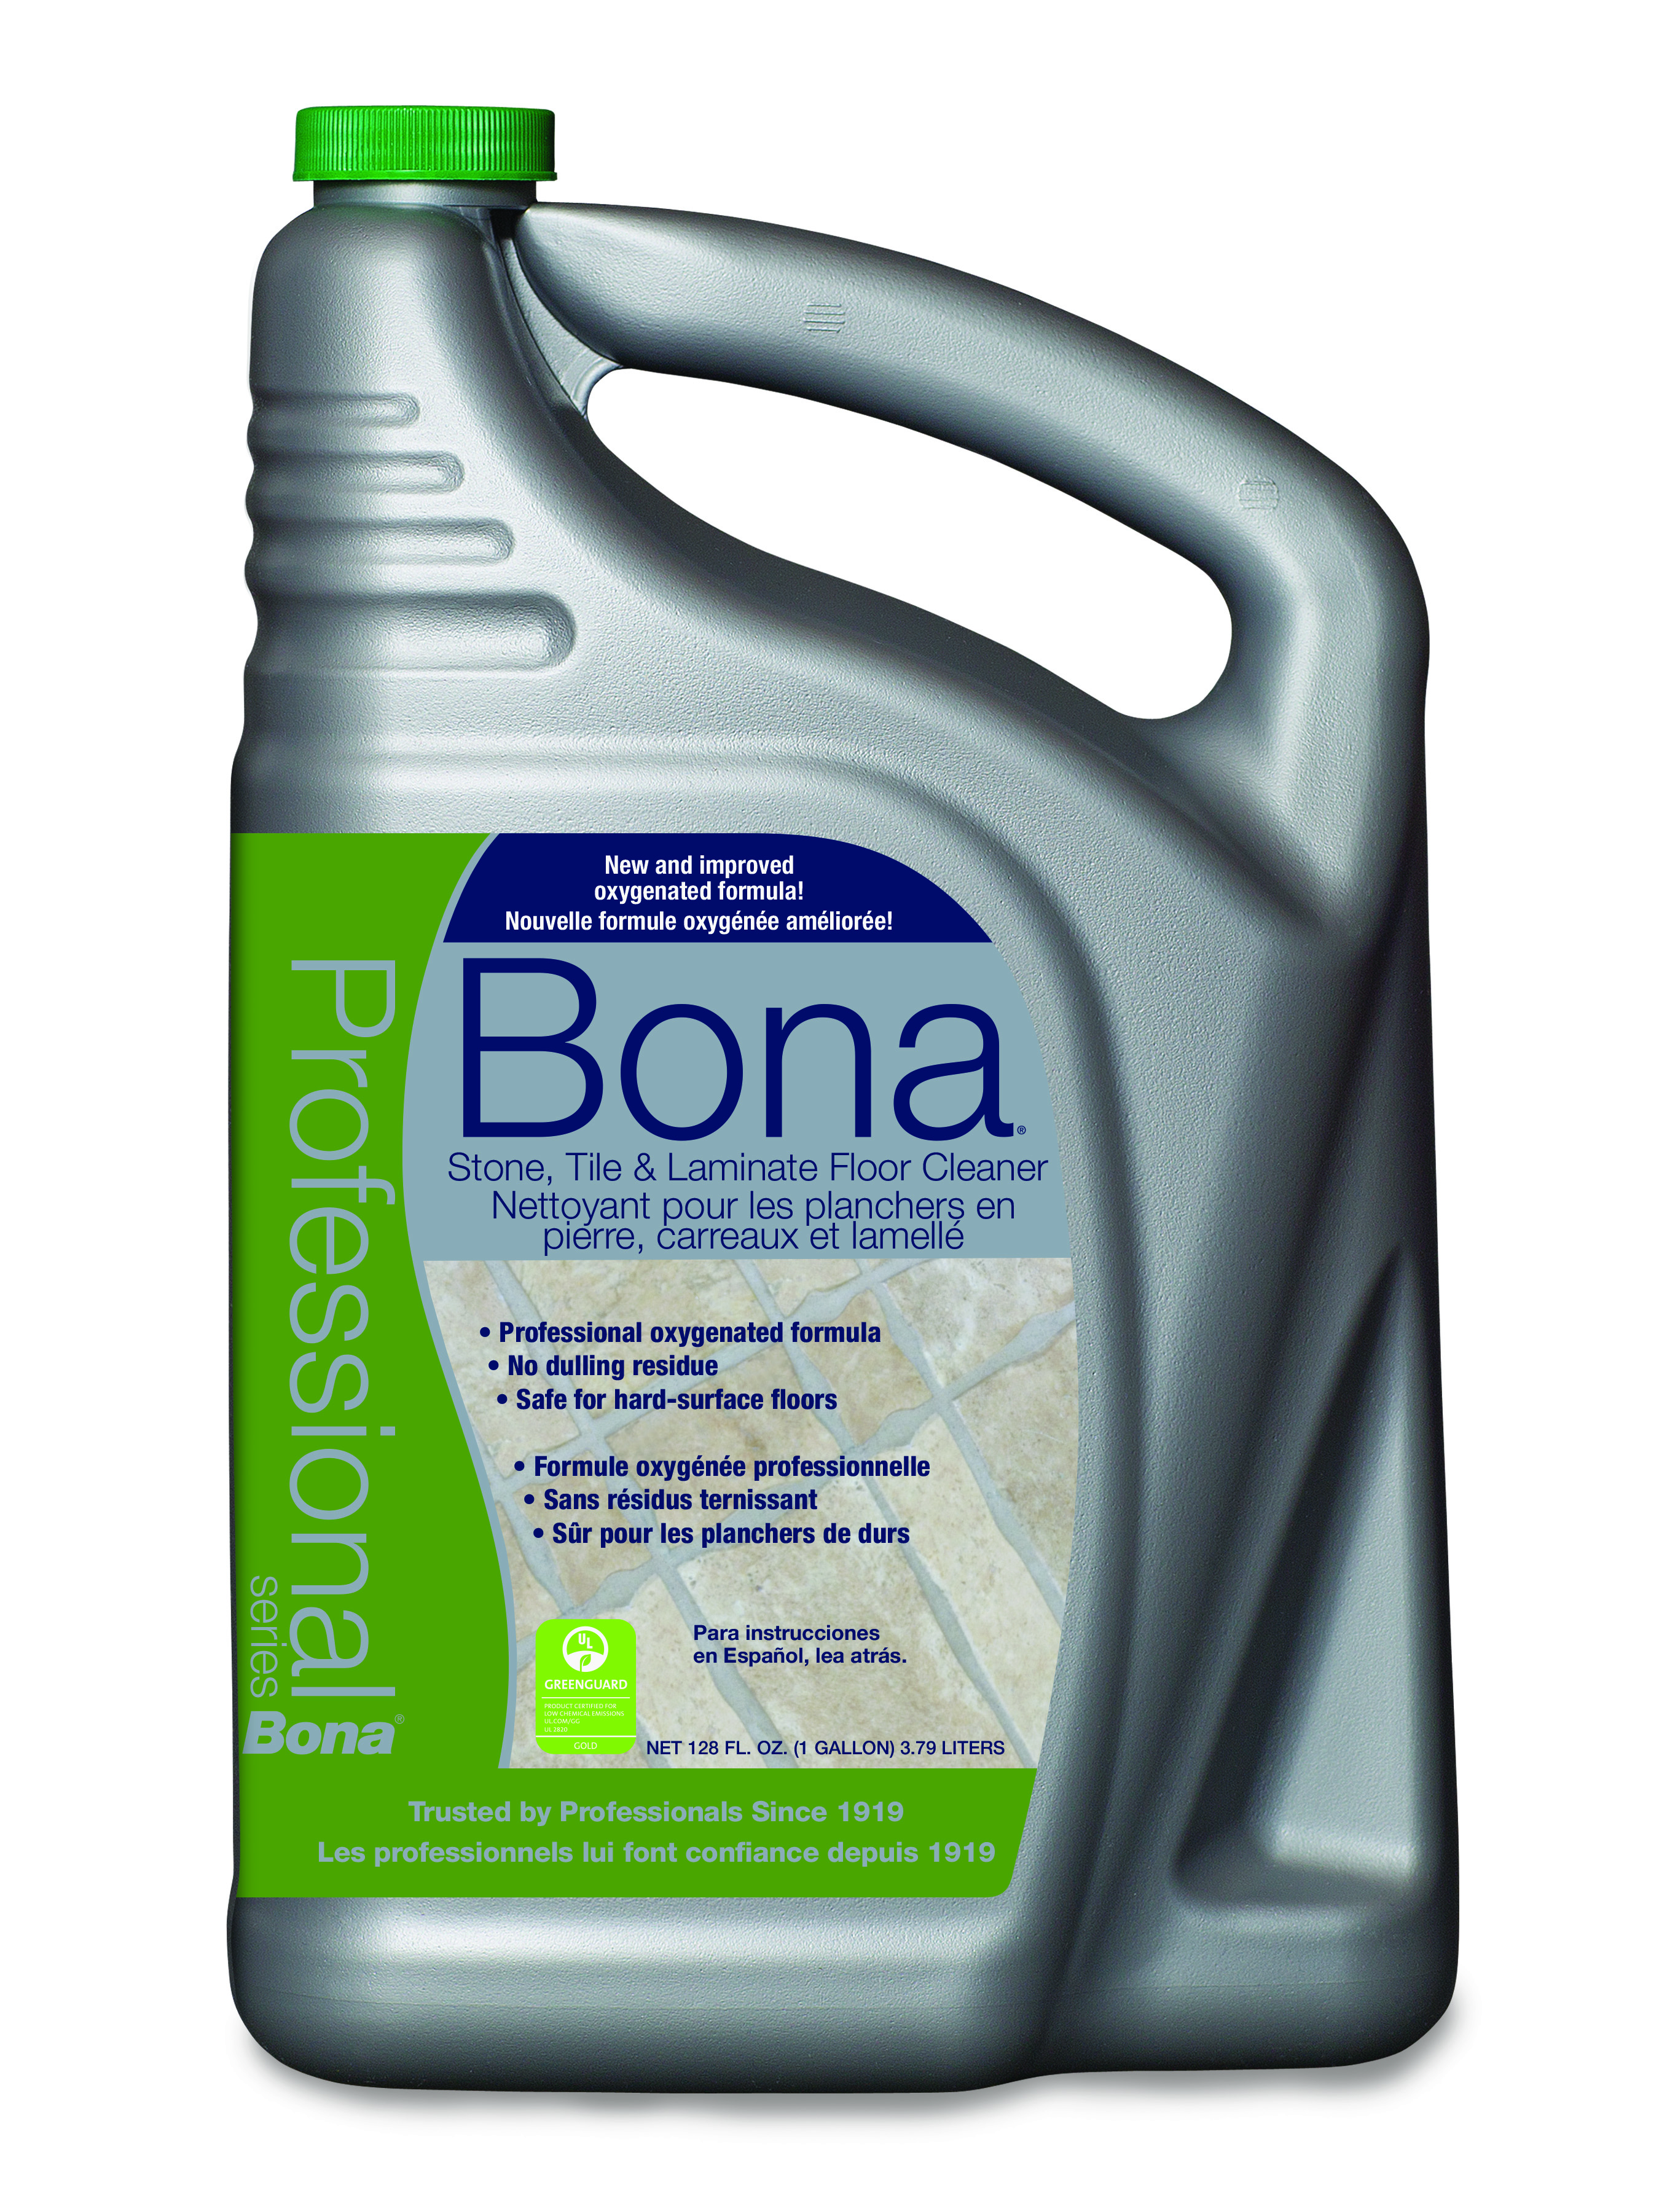 Bona Pro Series Stone, Tile & Laminate Floor Cleaner, 1 gal Refill Bottle - image 2 of 2